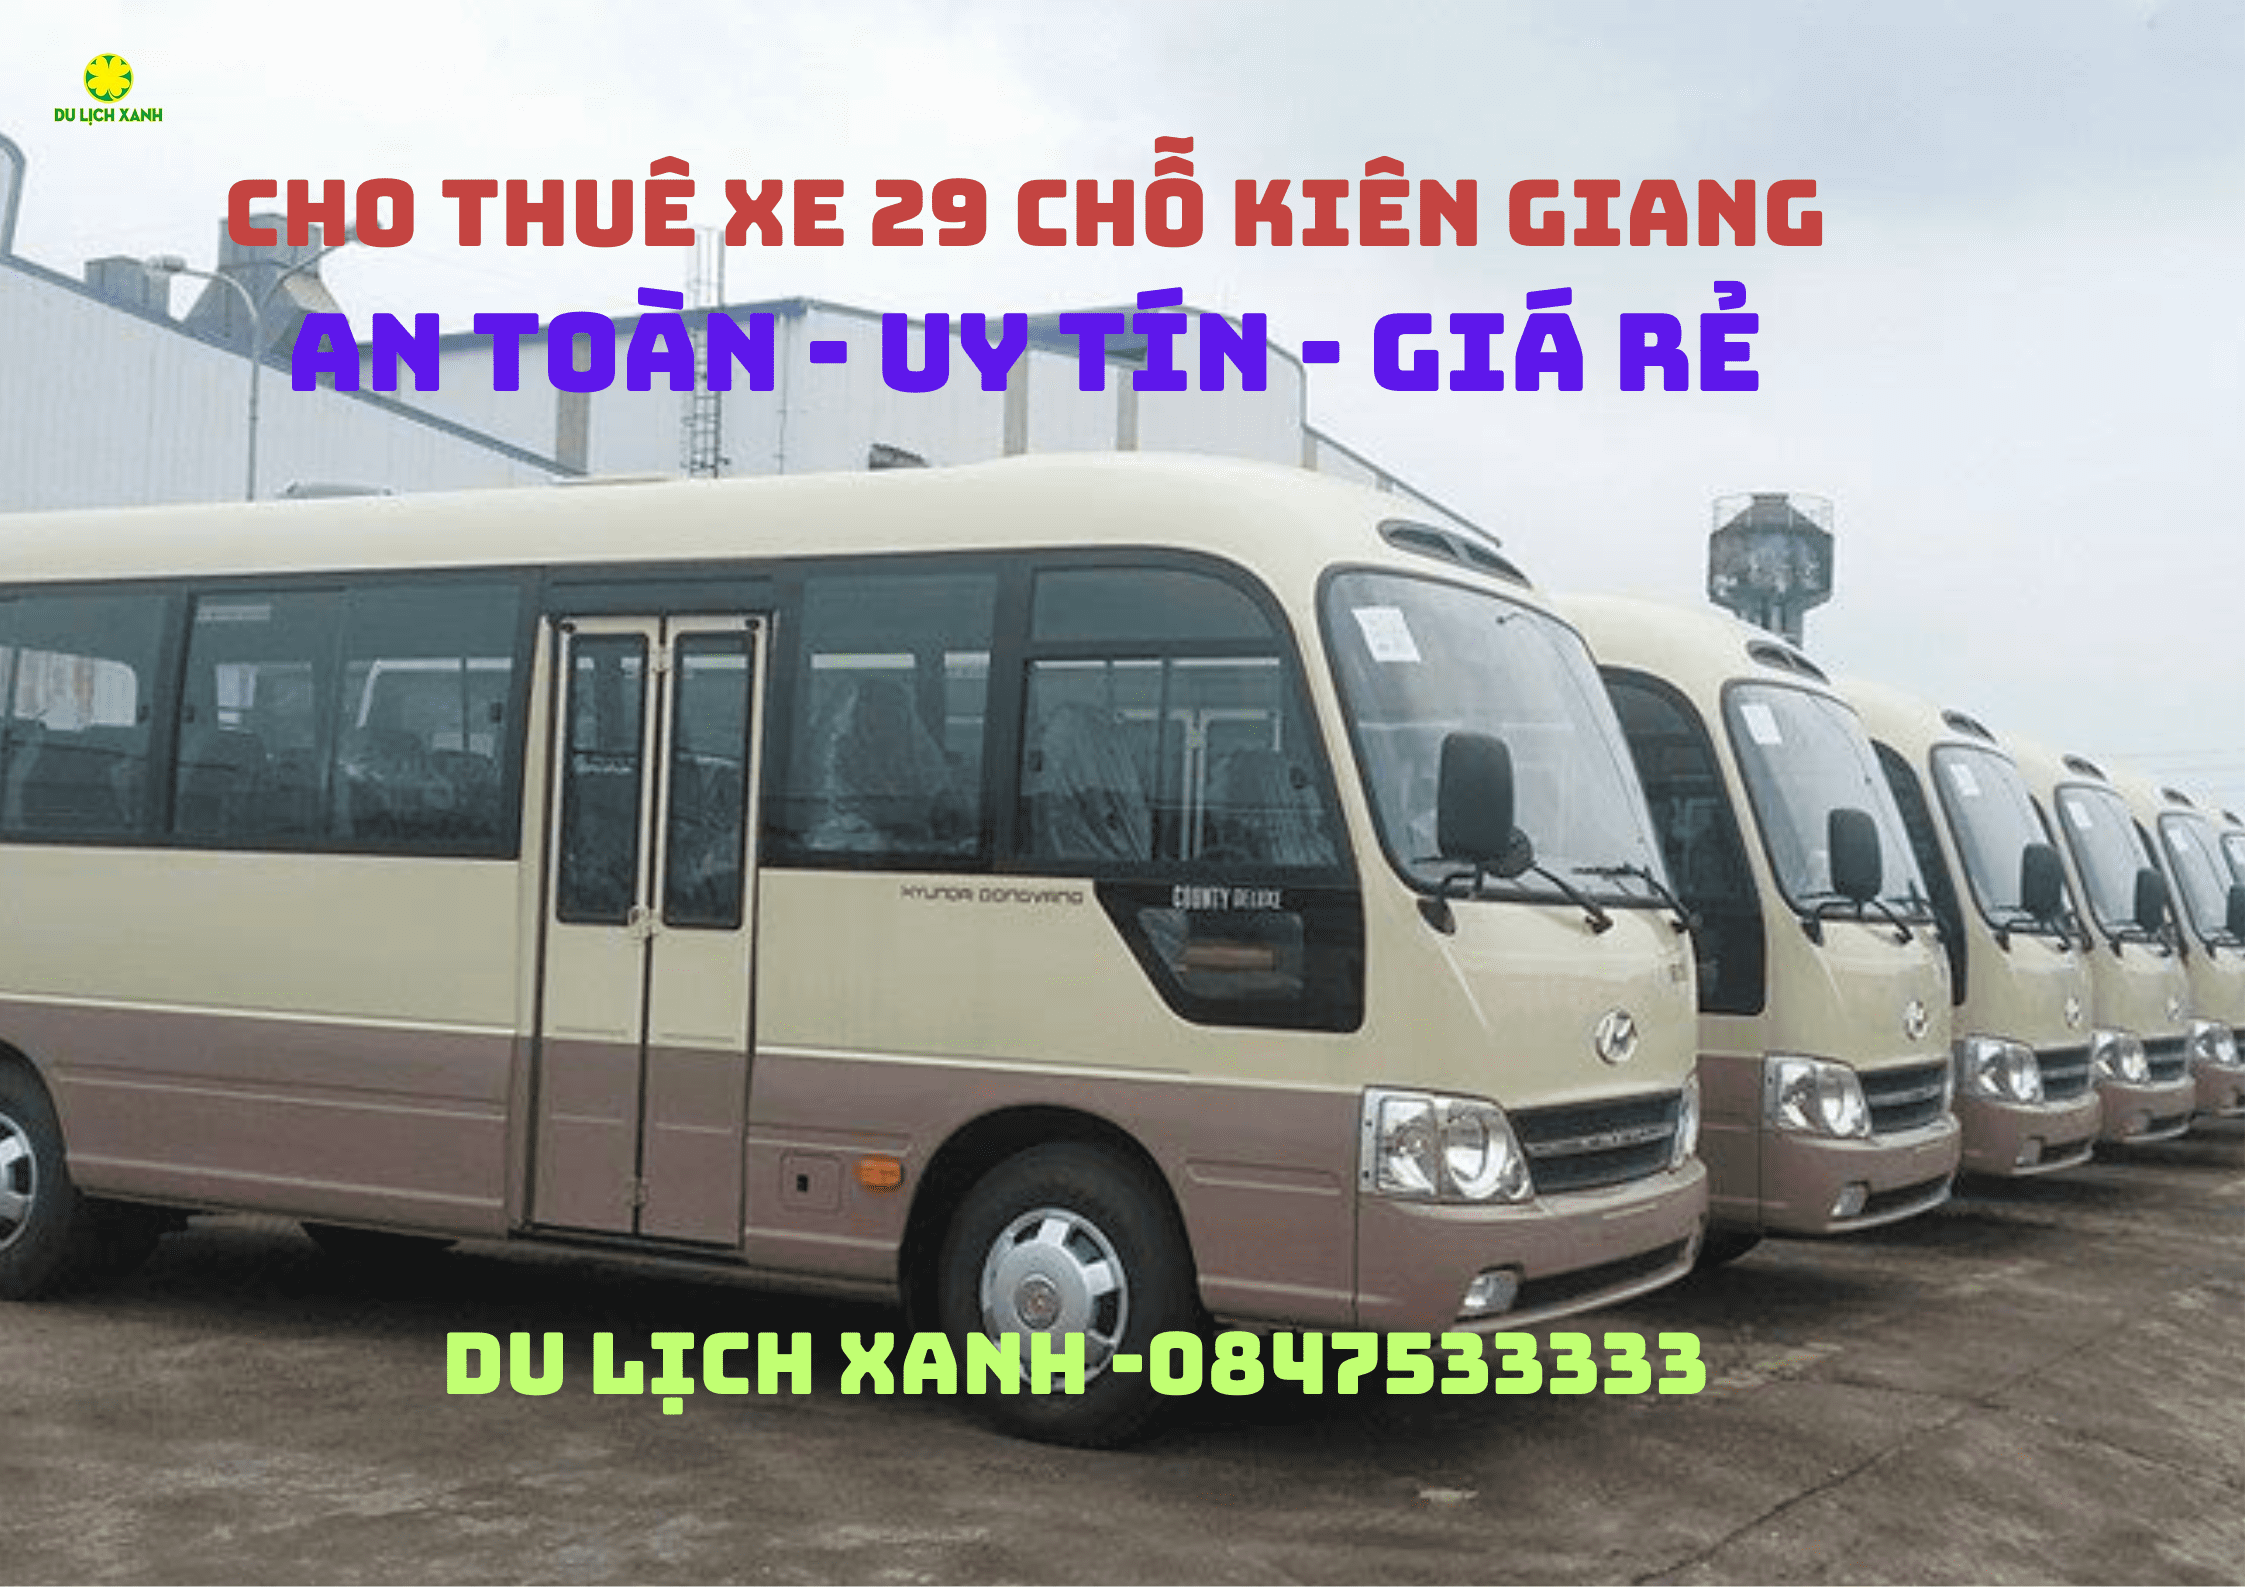 Cho thuê xe du lịch 29 chỗ tại Kiên Giang